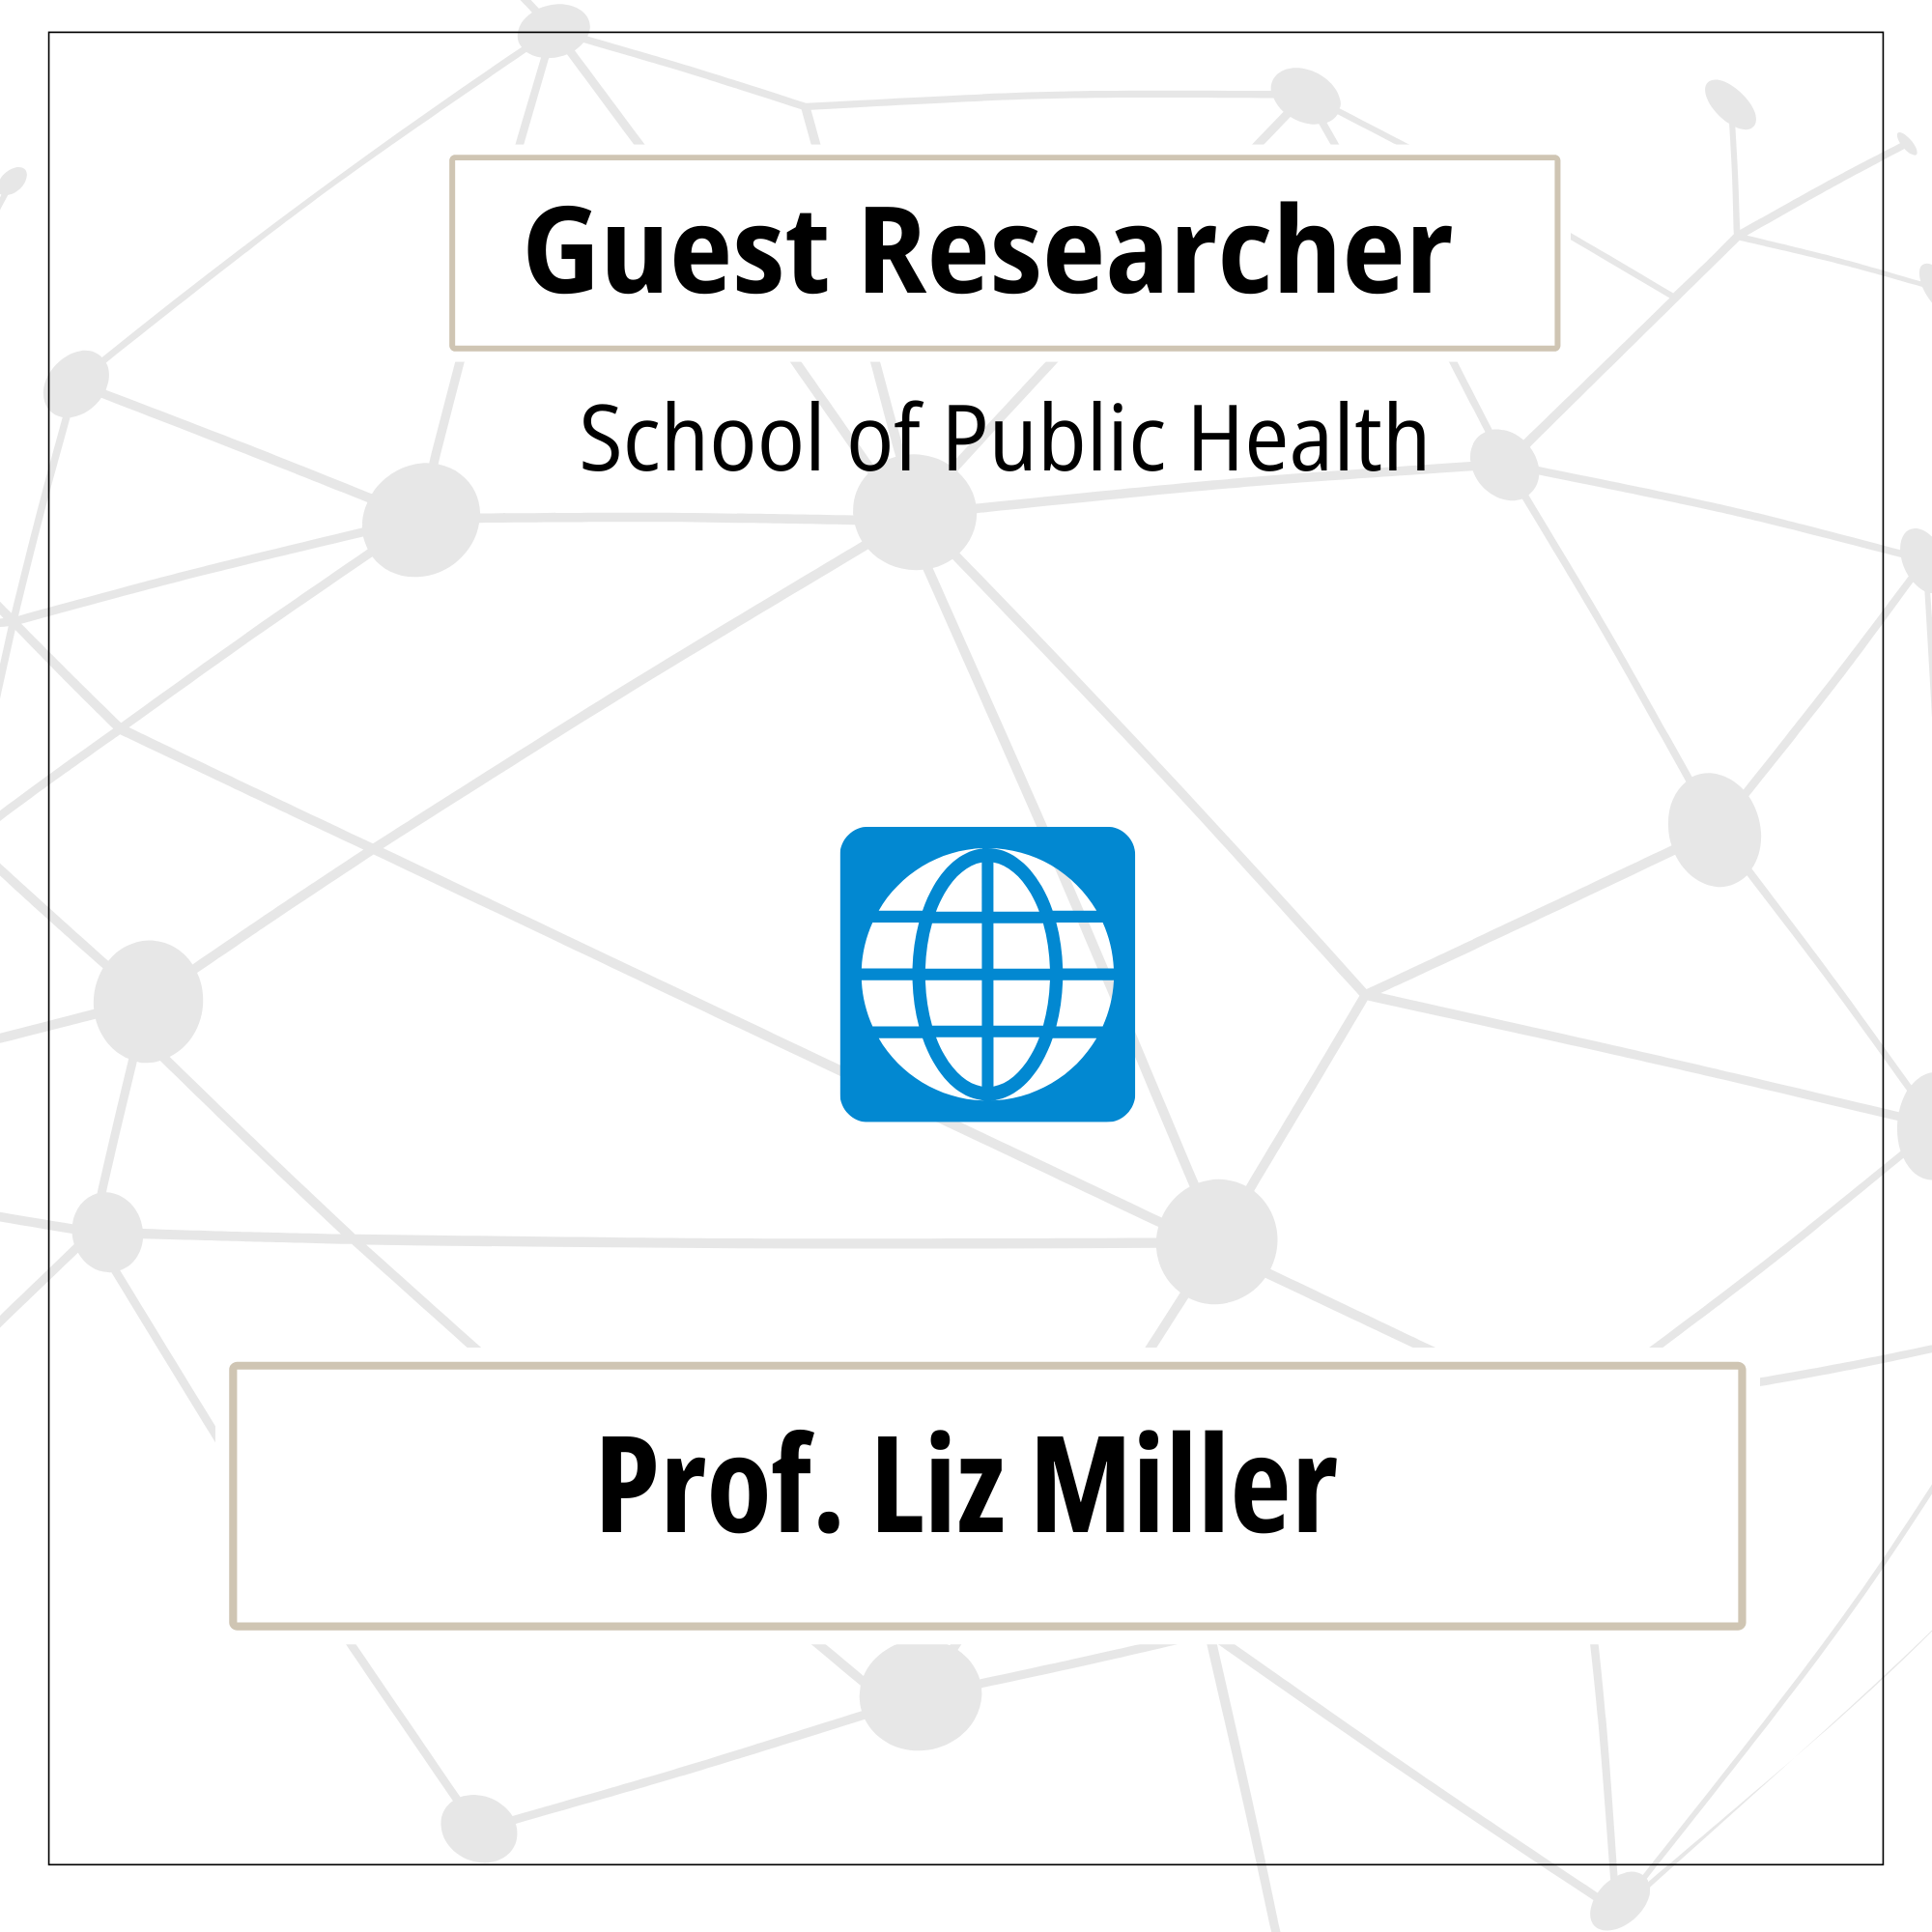 Prof. Liz Miller